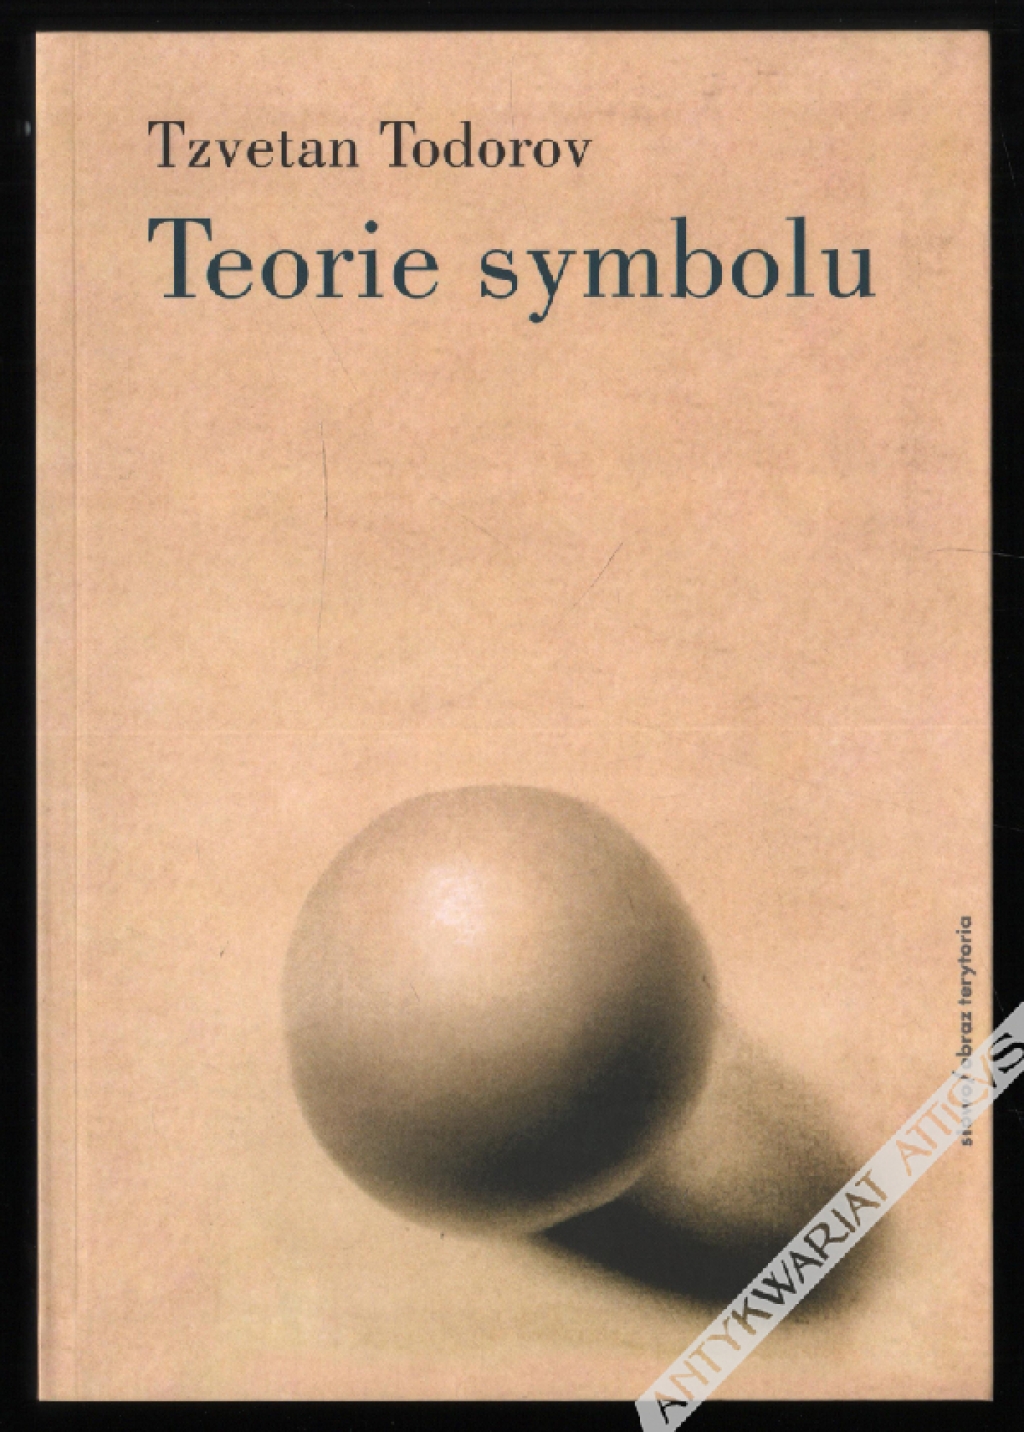 Teorie symbolu